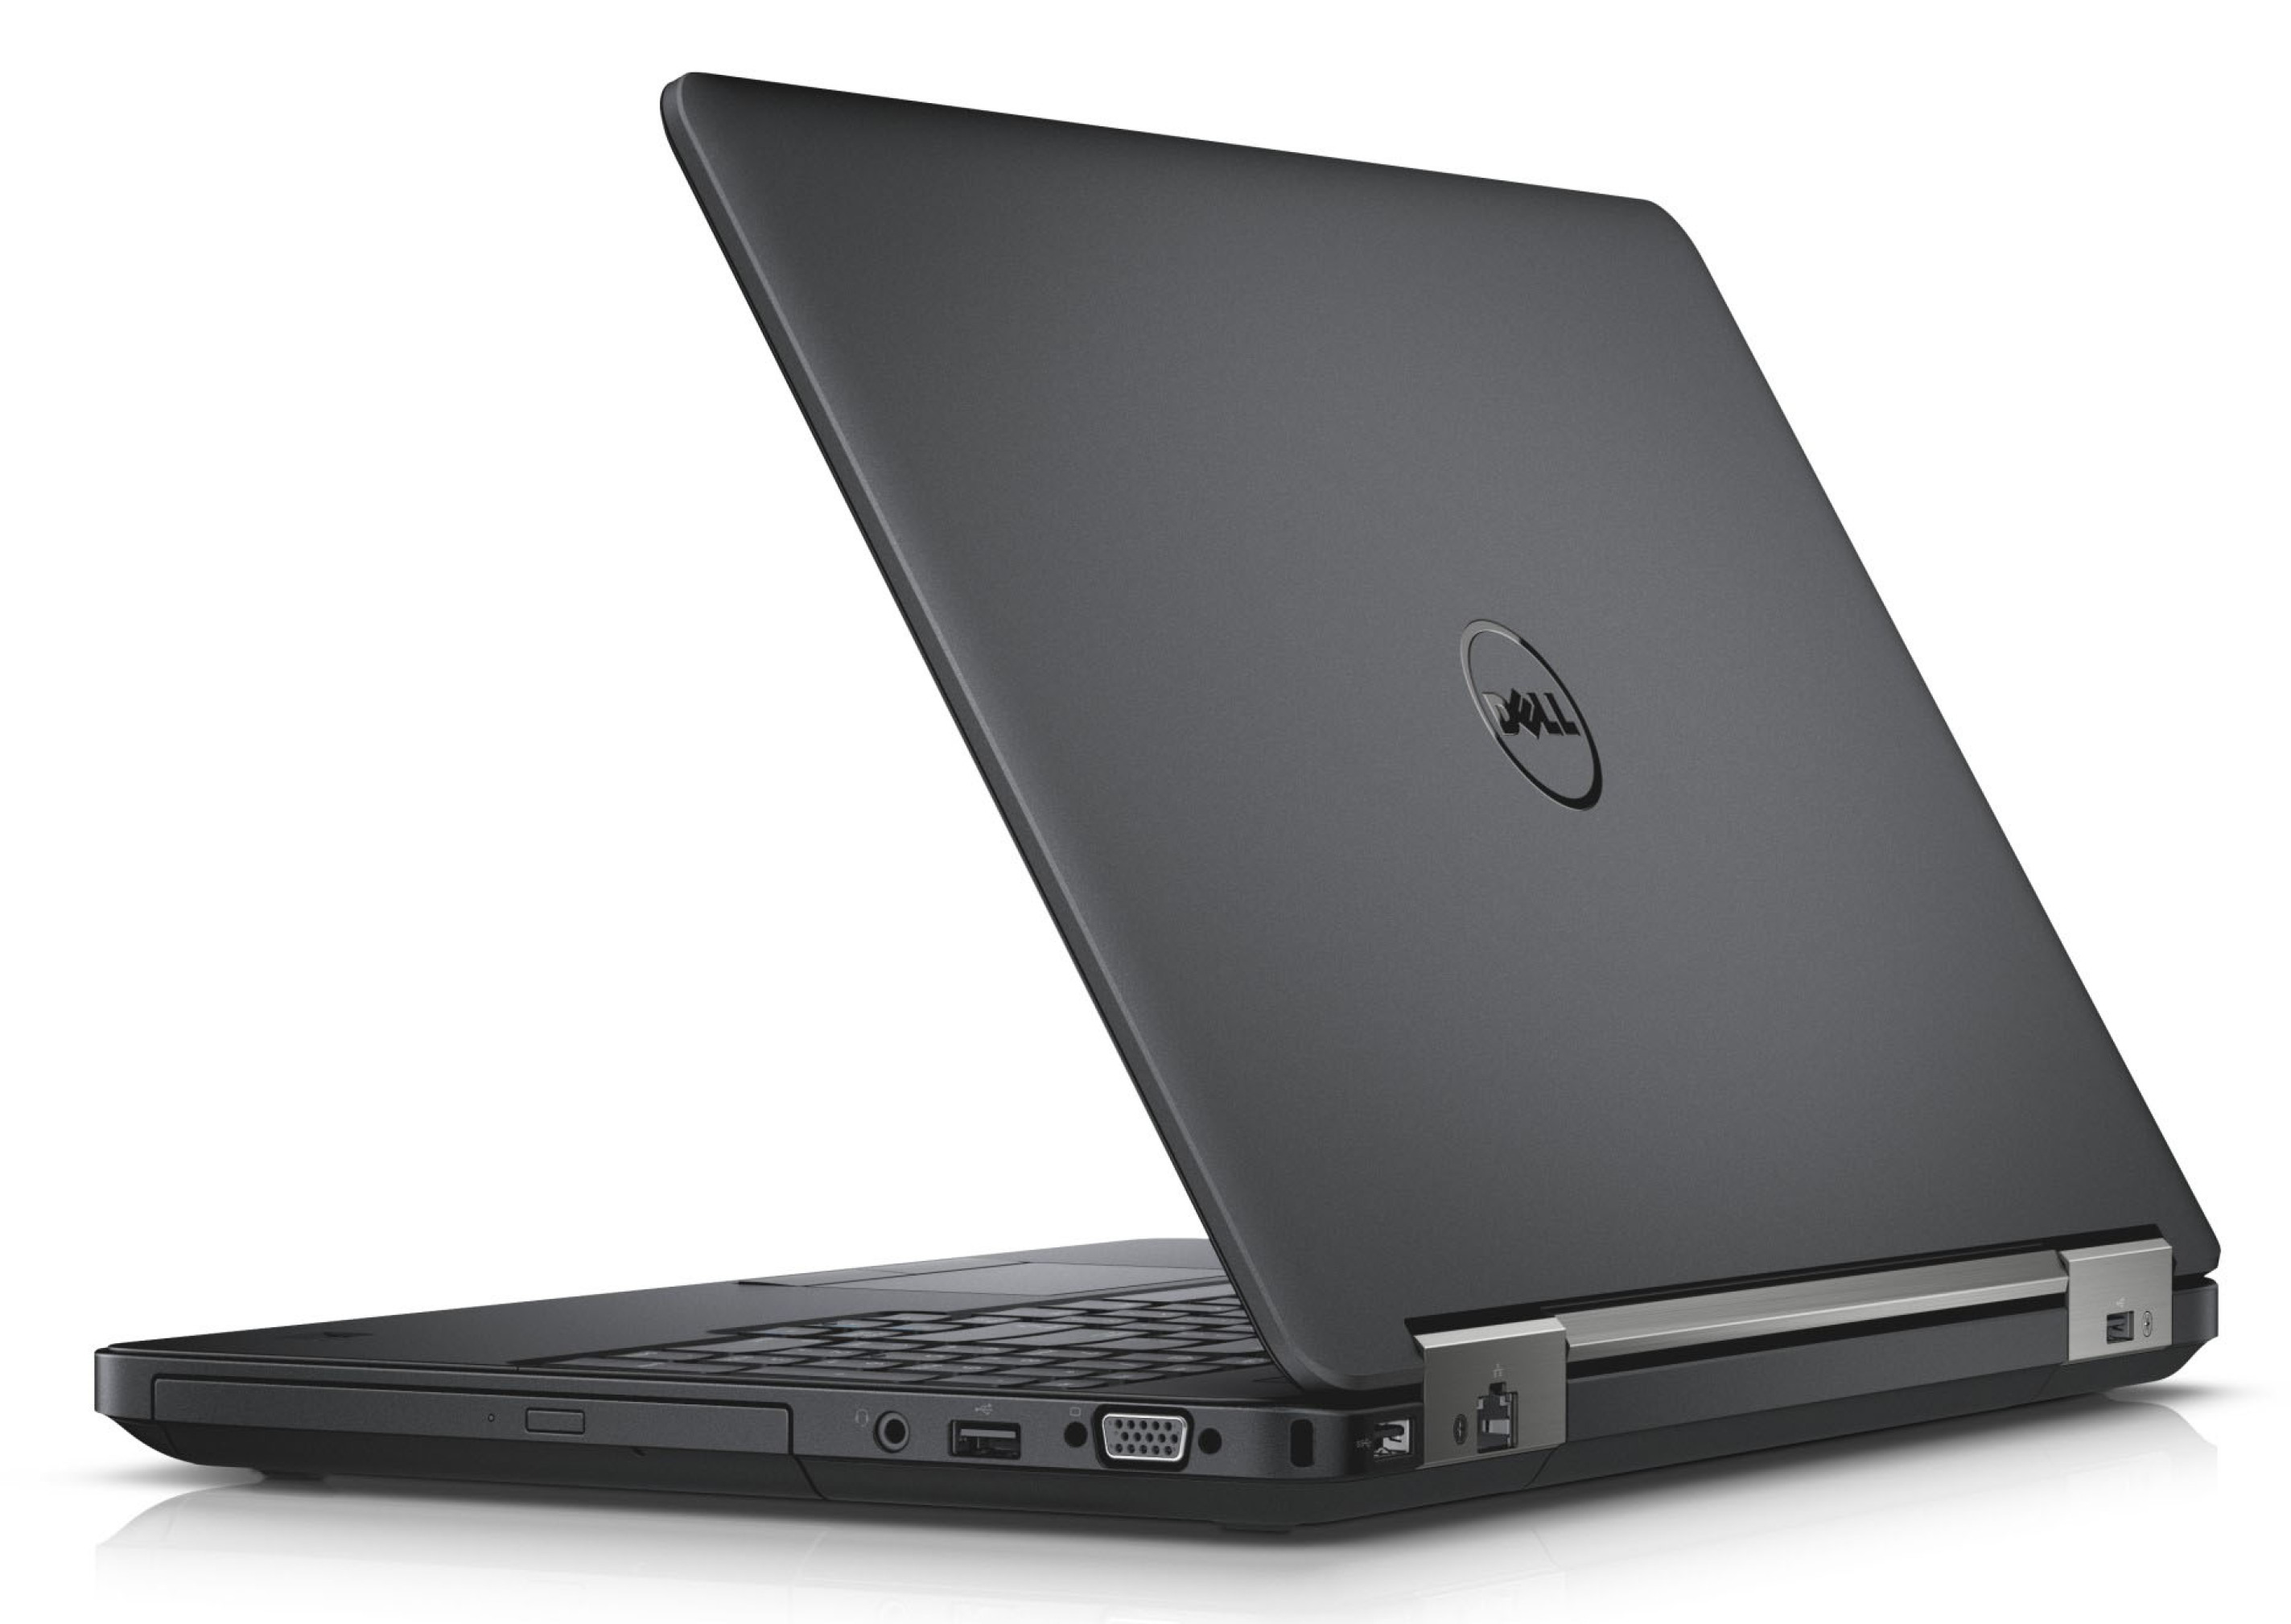  خرید مشخصات و قیمت لپ تاپ استوک اروپایی دل Dell Latitude E5540 با صفحه نمایش 15.6 اینچی فول اچ دی و هارد 500 گیگ و گرافی 